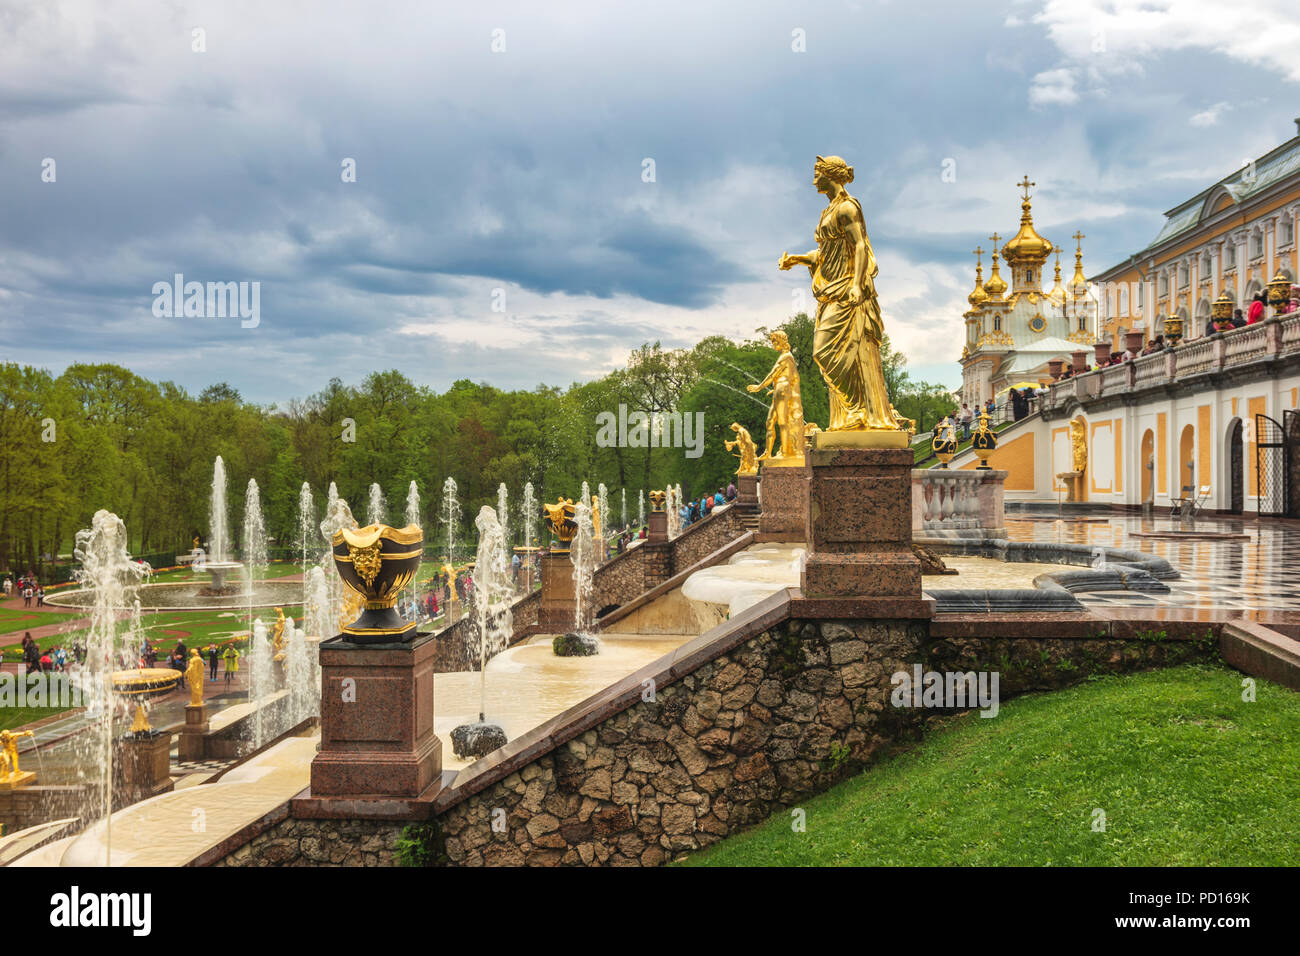 Sankt Petersburg, Russland - 16. MAI 2018: Skyline am unteren Garten und Große Kaskade Springbrunnen von Schloss Peterhof, Sankt Petersburg, Russland Stockfoto